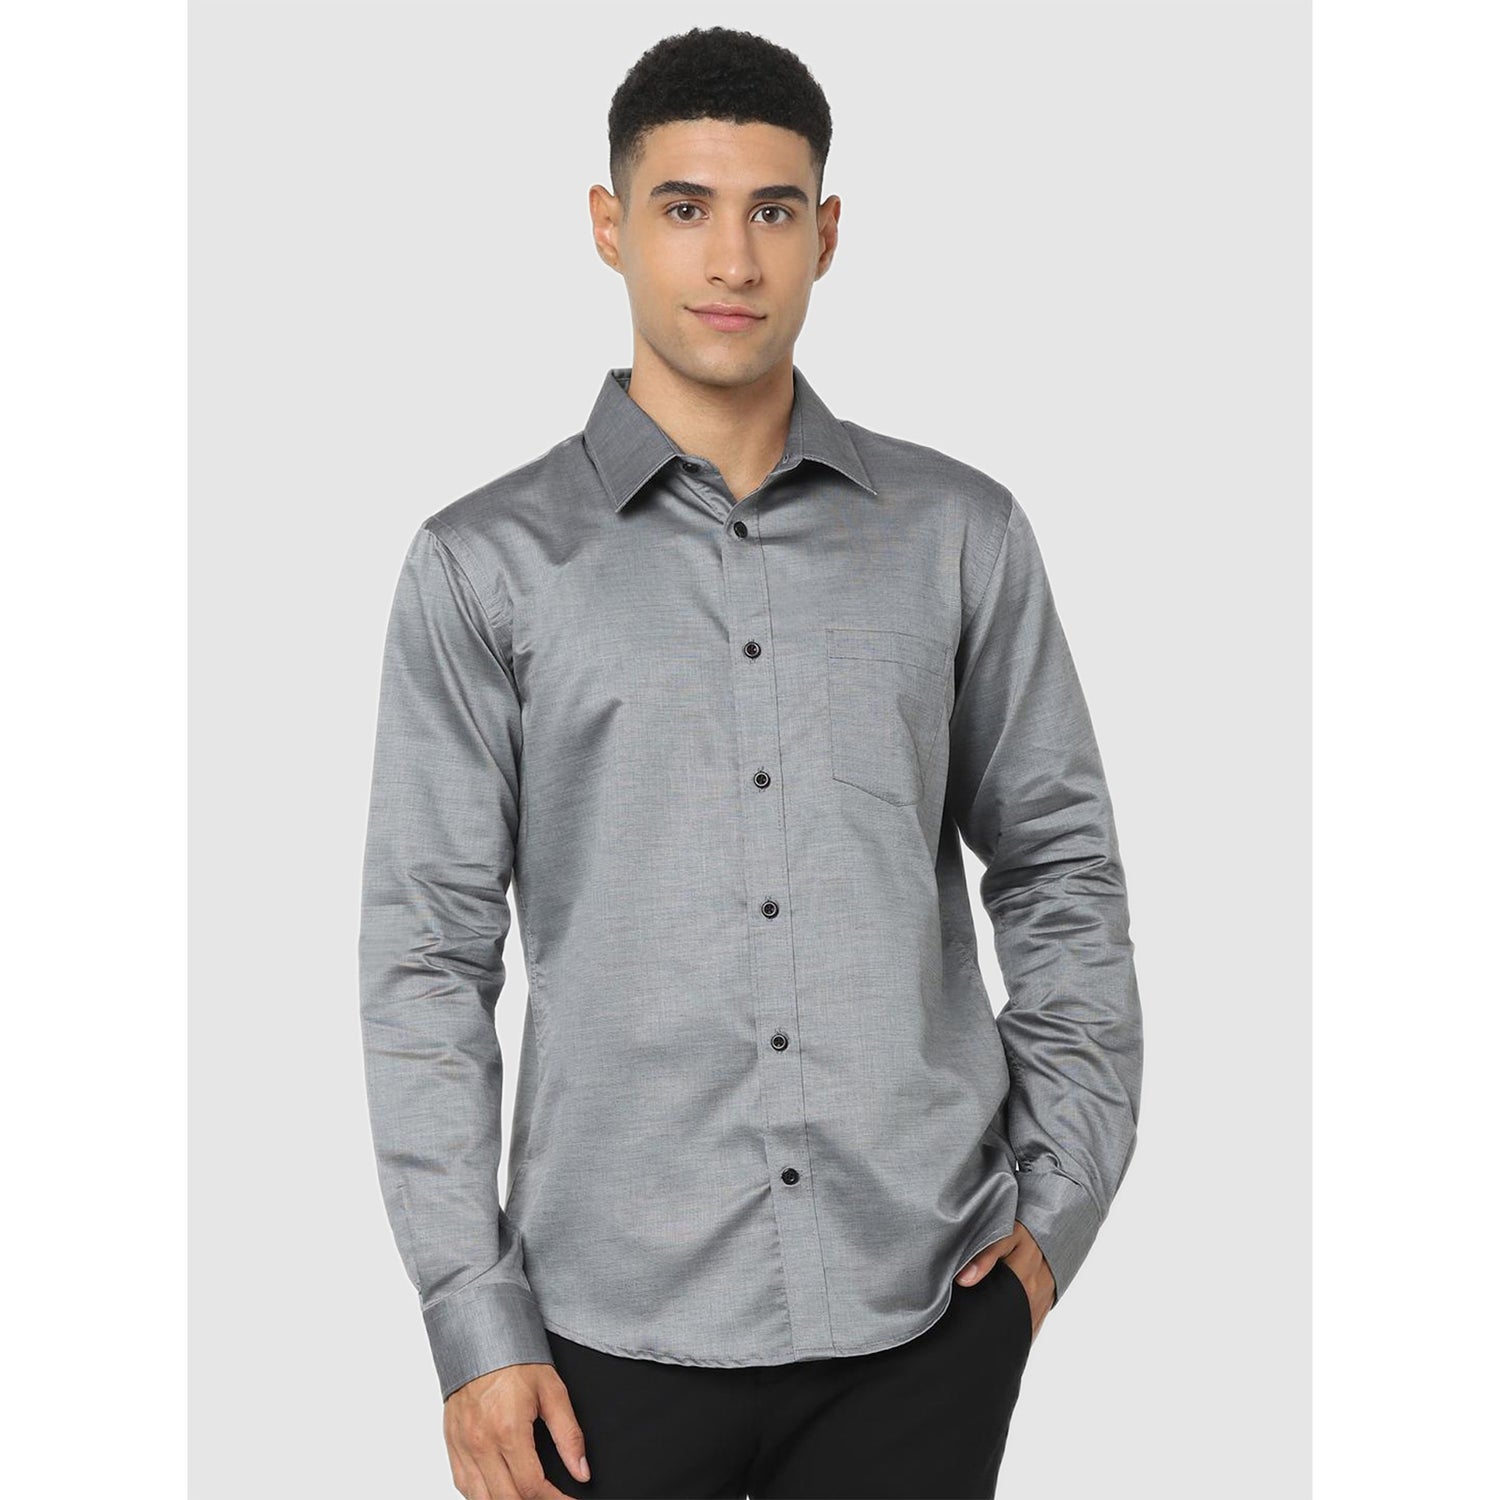 Grey Classic Regular Fit Casual Shirt (CAPREM2)